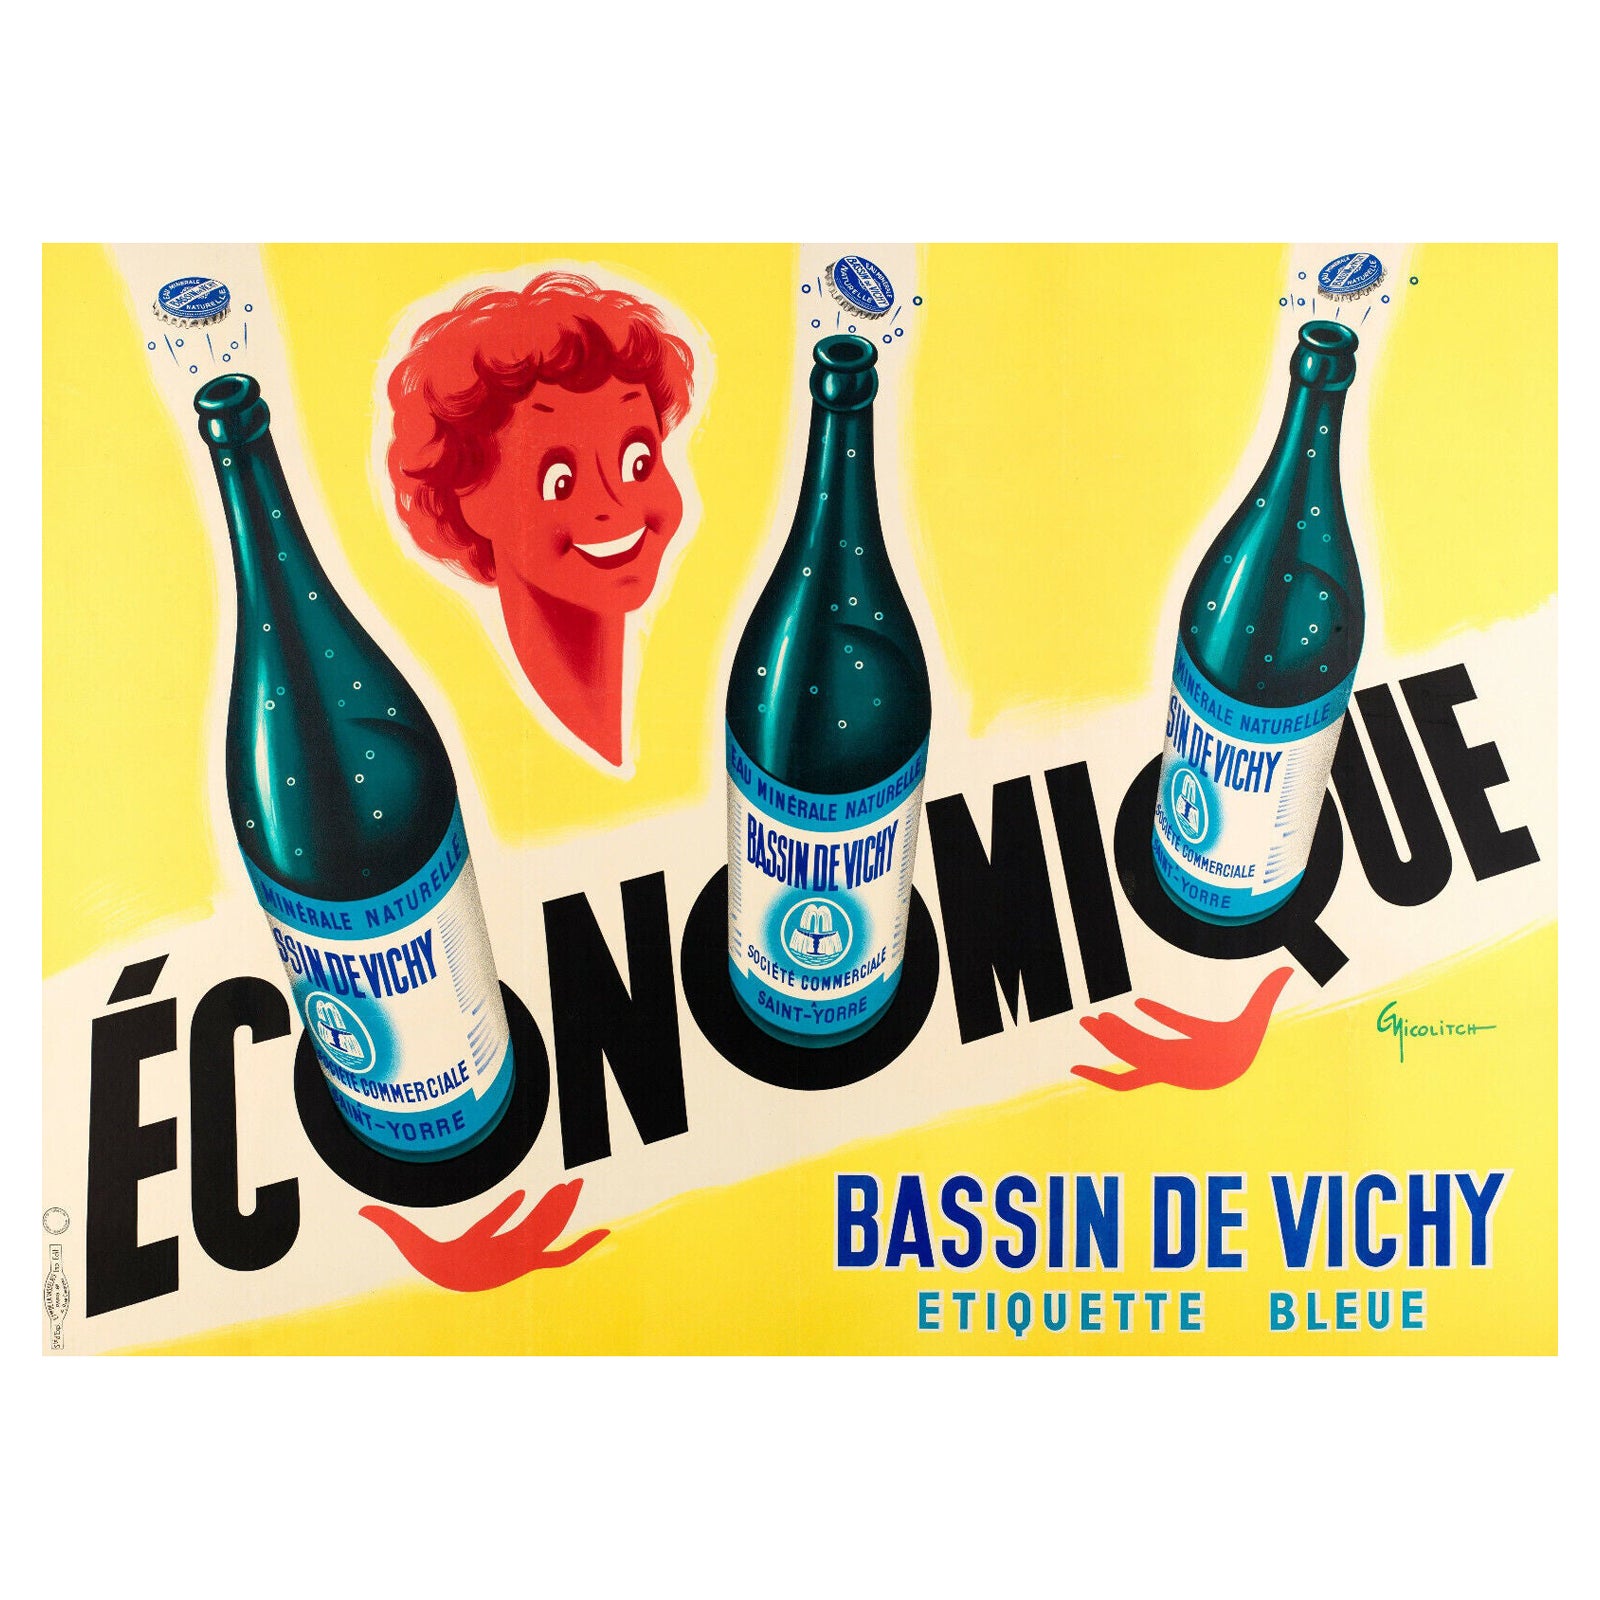 Original Vintage Poster-G. Nicolitch-Vichy Saint-Yorre-Mineralwasser, 1953